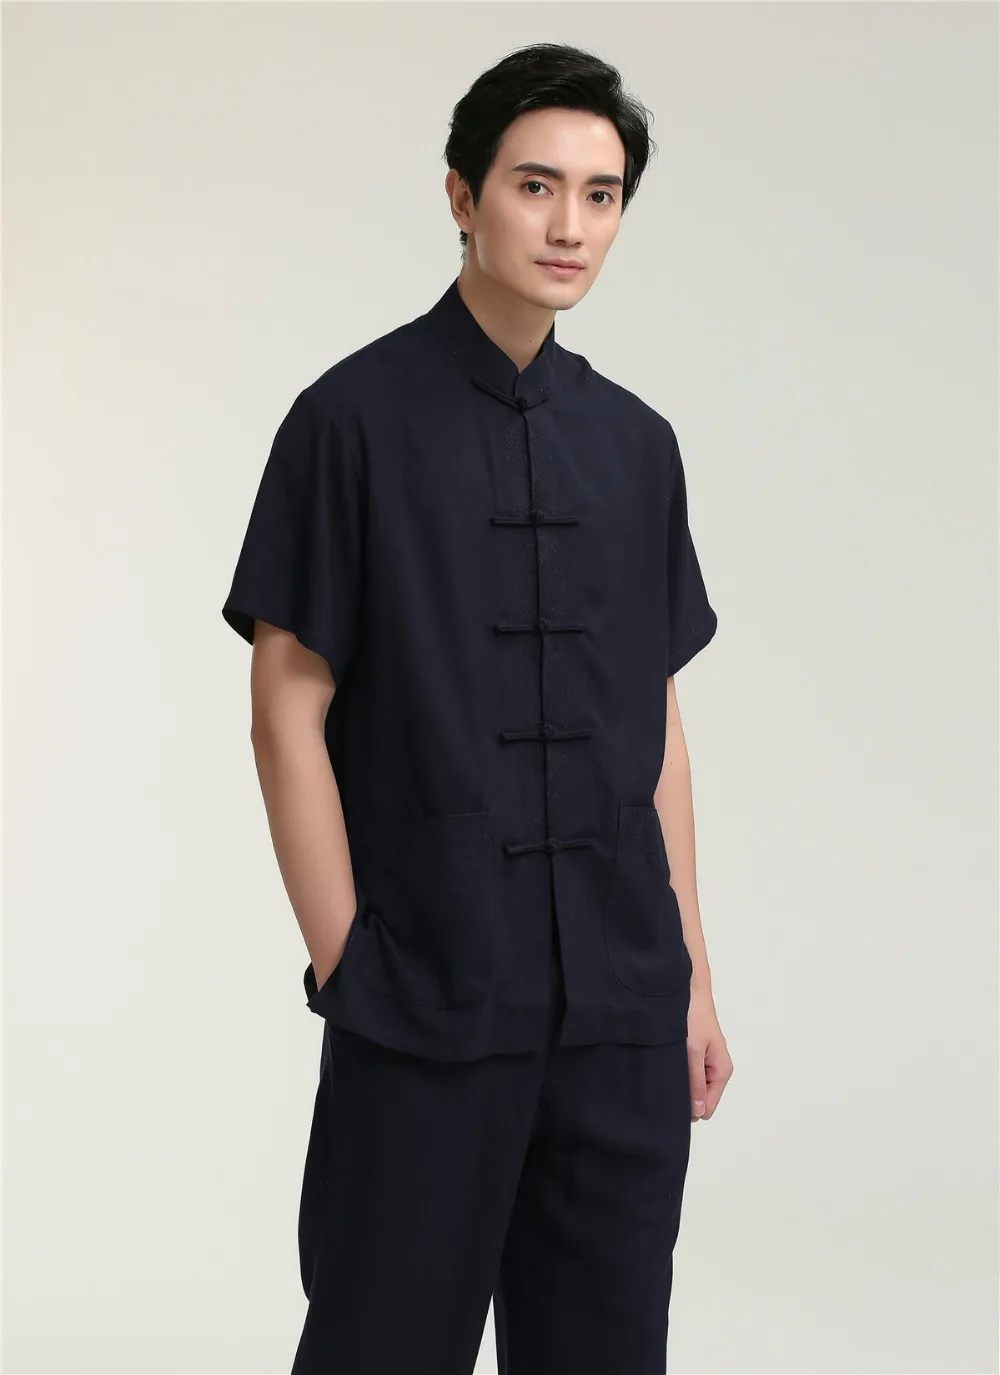 Шанхай история короткий рукав Китайская традиционная Костюмы кунг-фу Рубашка для парня китайского Топ для человека свободную рубашку